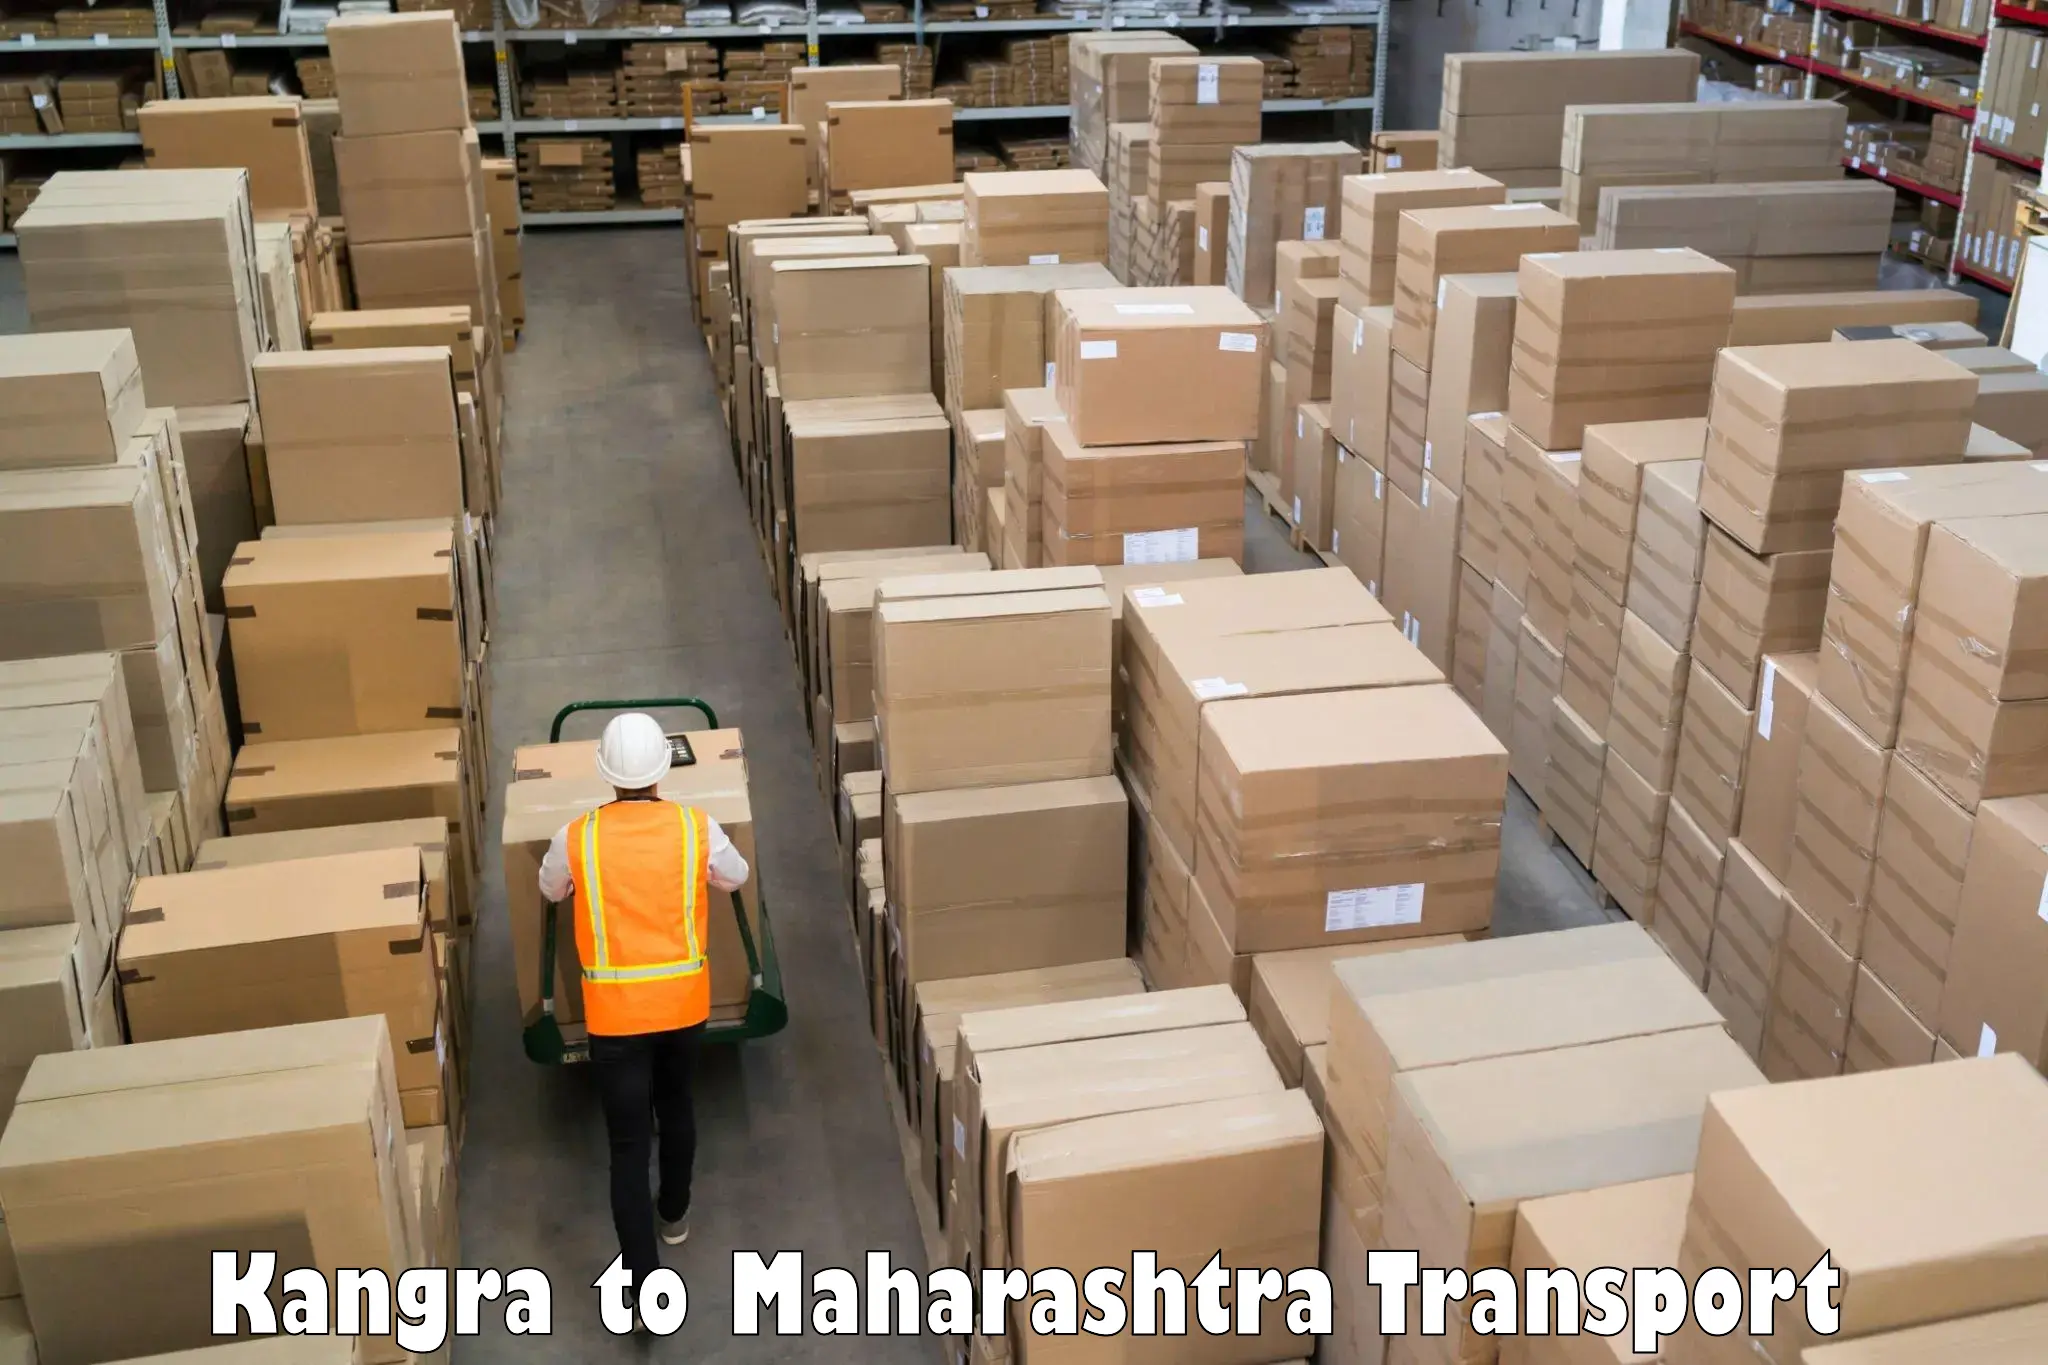 Furniture transport service Kangra to Kolhapur